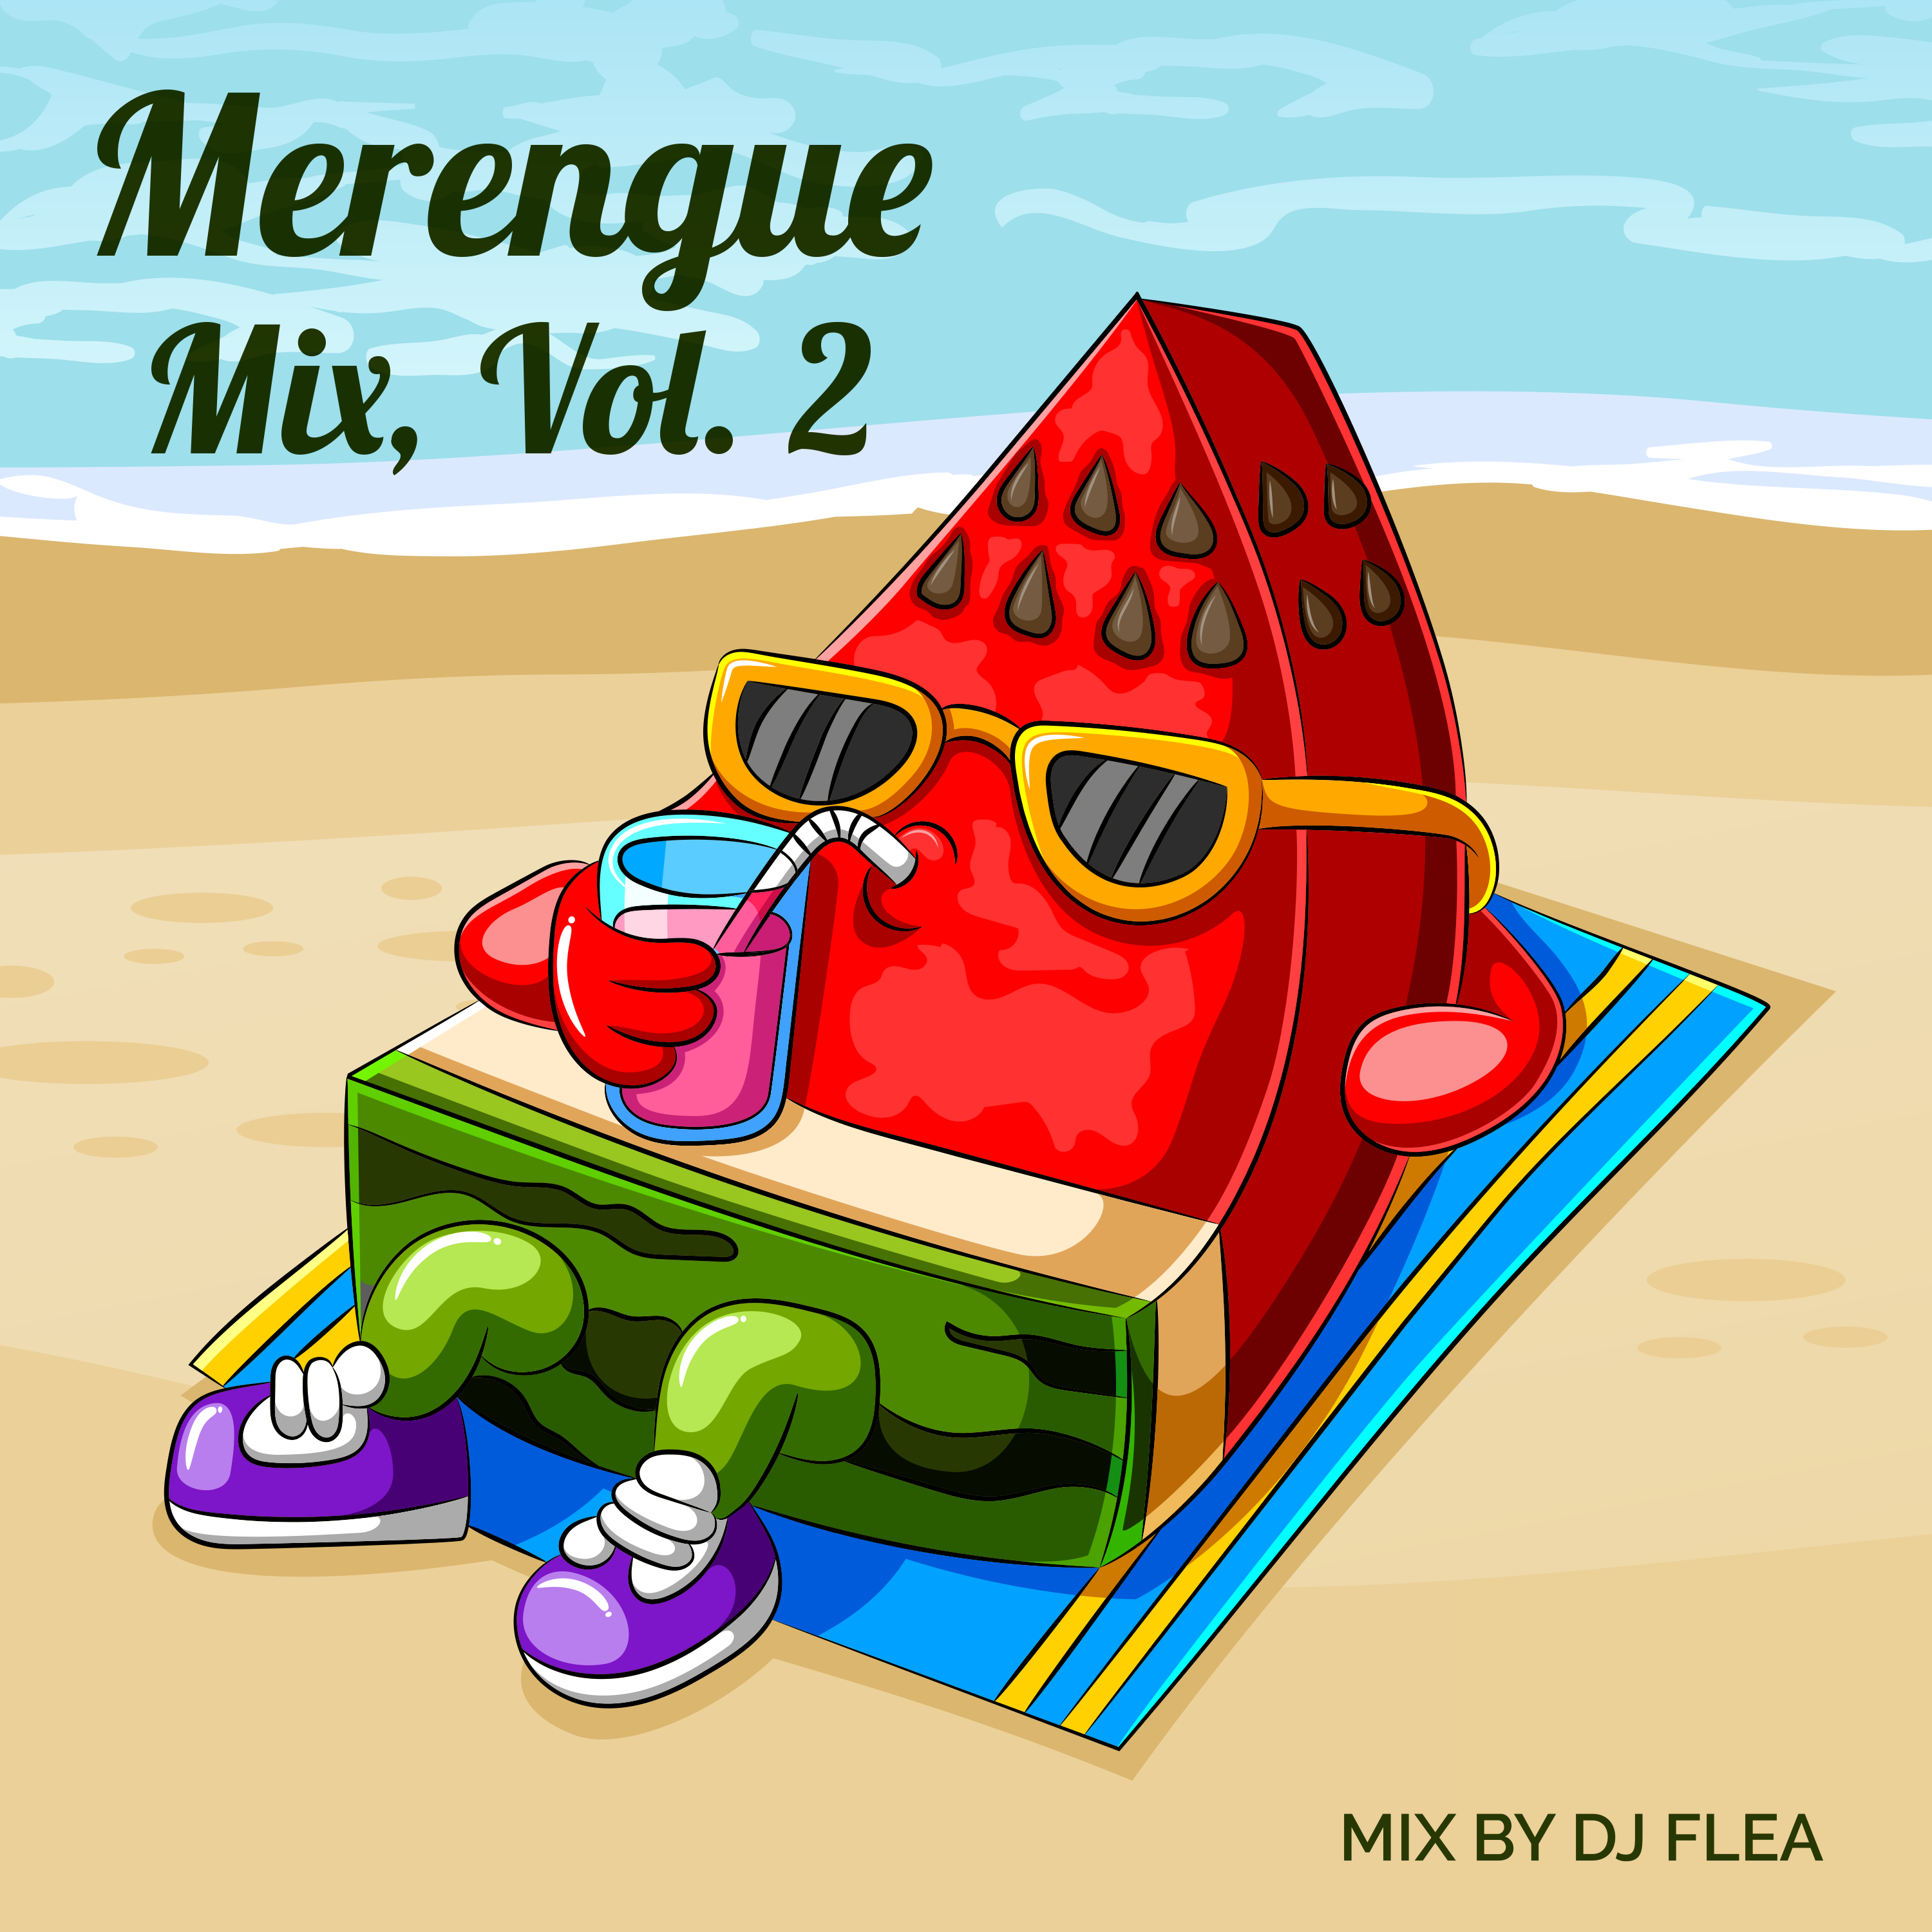 Merengue Vol. 2 DJ